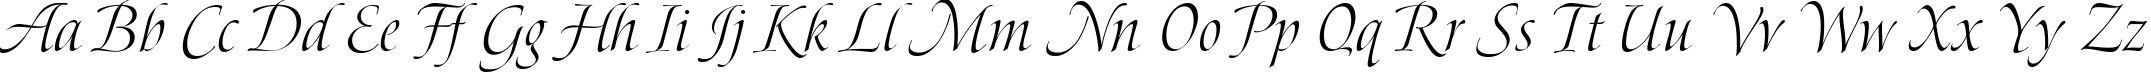 Пример написания английского алфавита шрифтом Bolero script